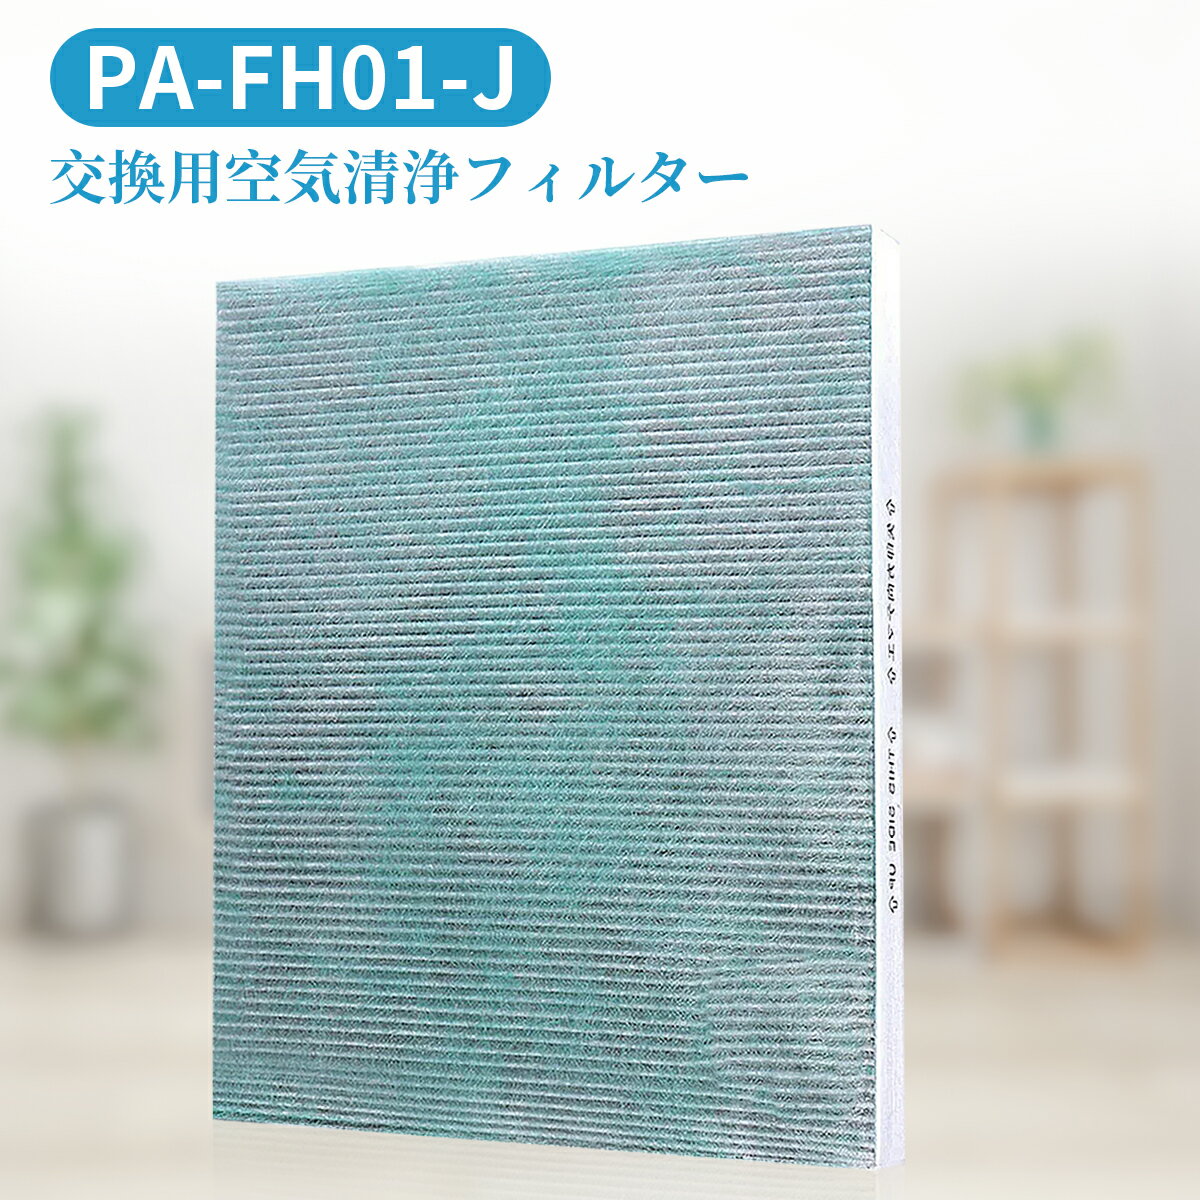 PA-FH01-J 集じん 制菌 フィルター pa-fh